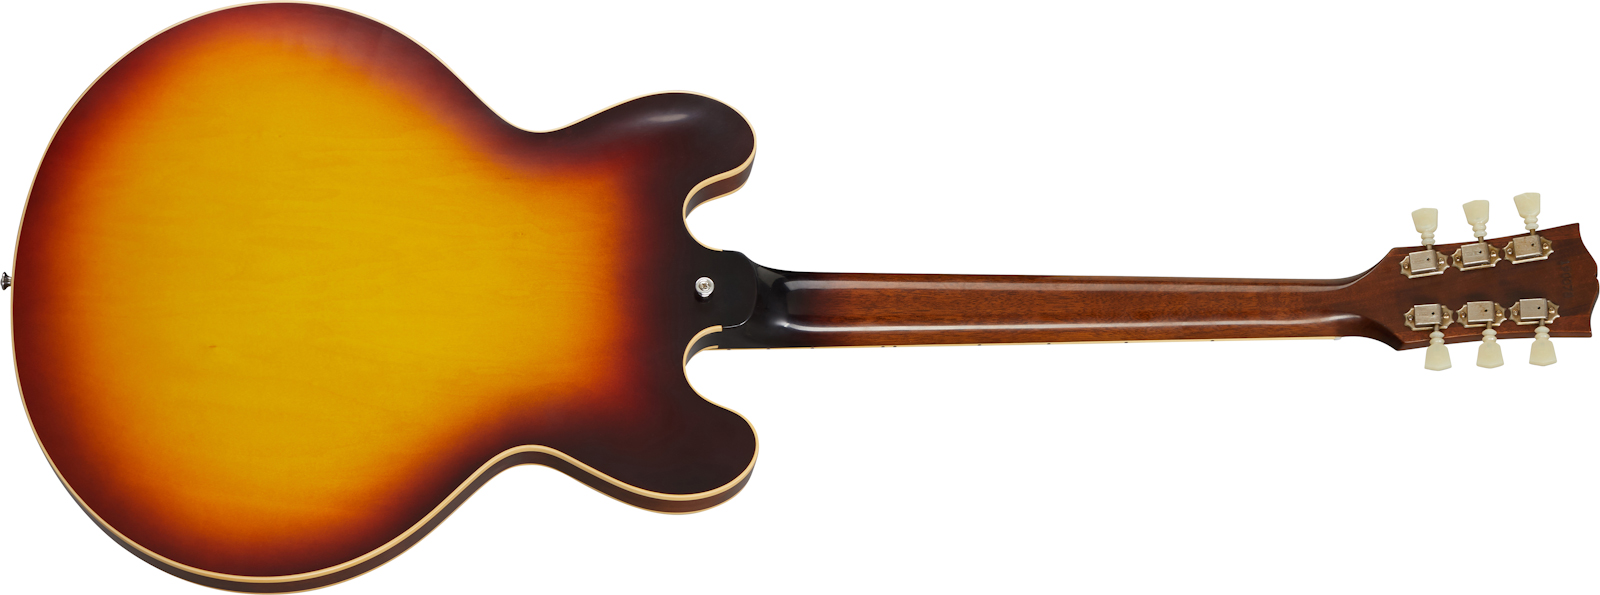 Gibson Custom Shop Historic Es335 Reissue 1961 2h Ht Rw - Vos Vintage Burst - Semi hollow elektriche gitaar - Variation 1